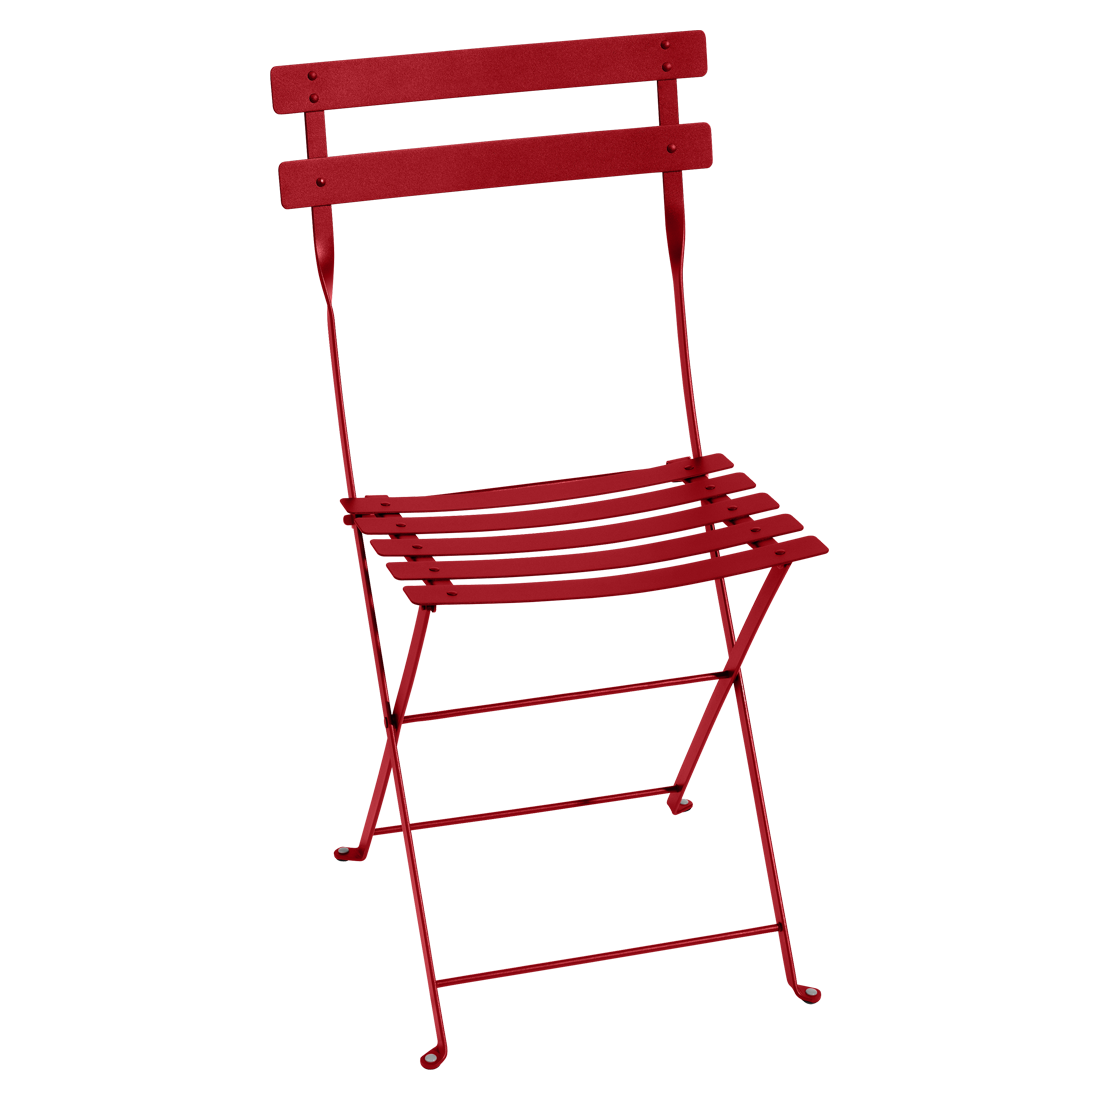 Makově červená kovová skládací židle